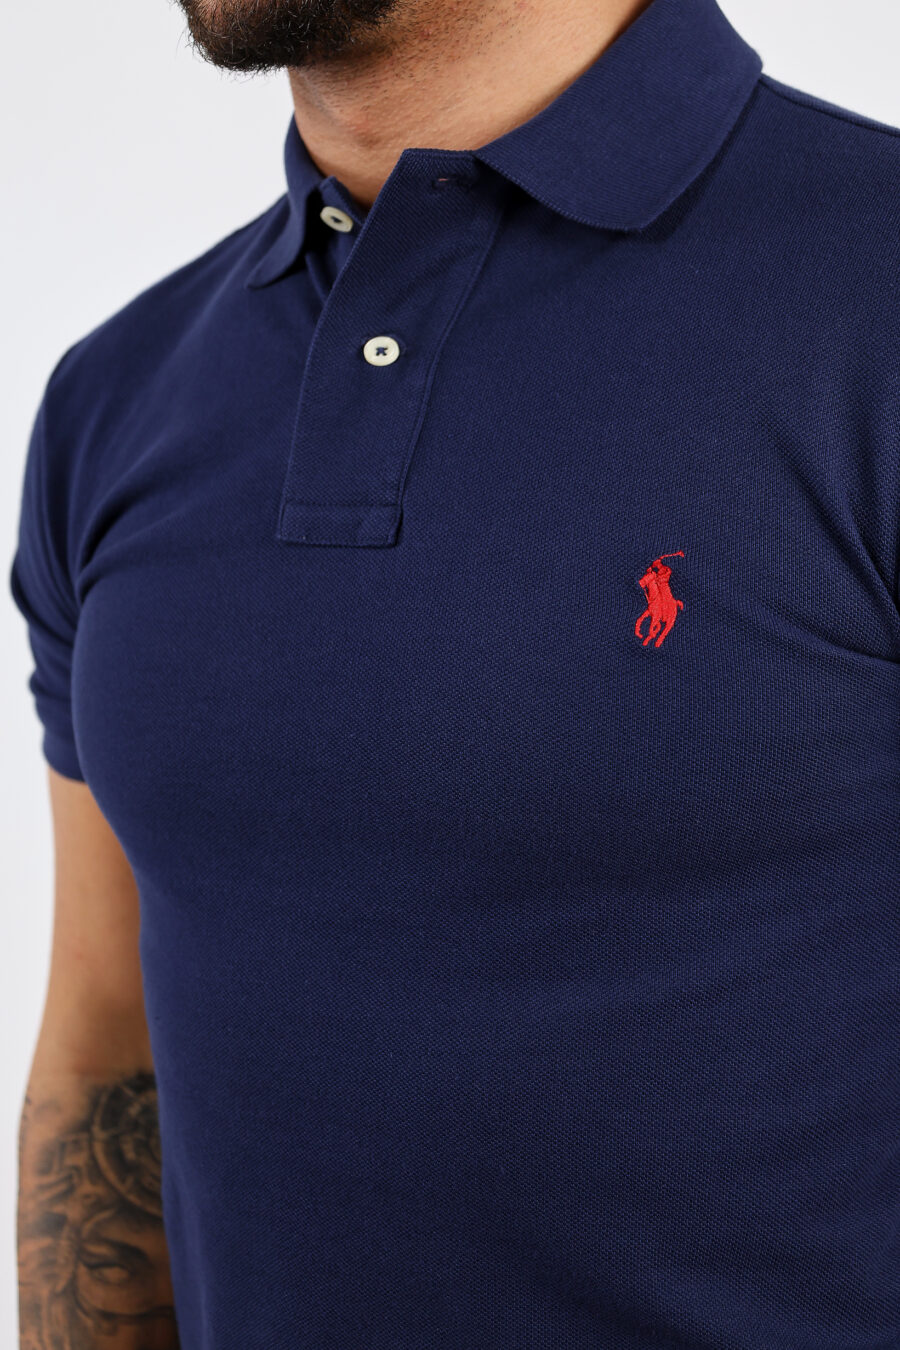 Pólo azul escuro com mini-logotipo "polo" - BLS Fashion 307